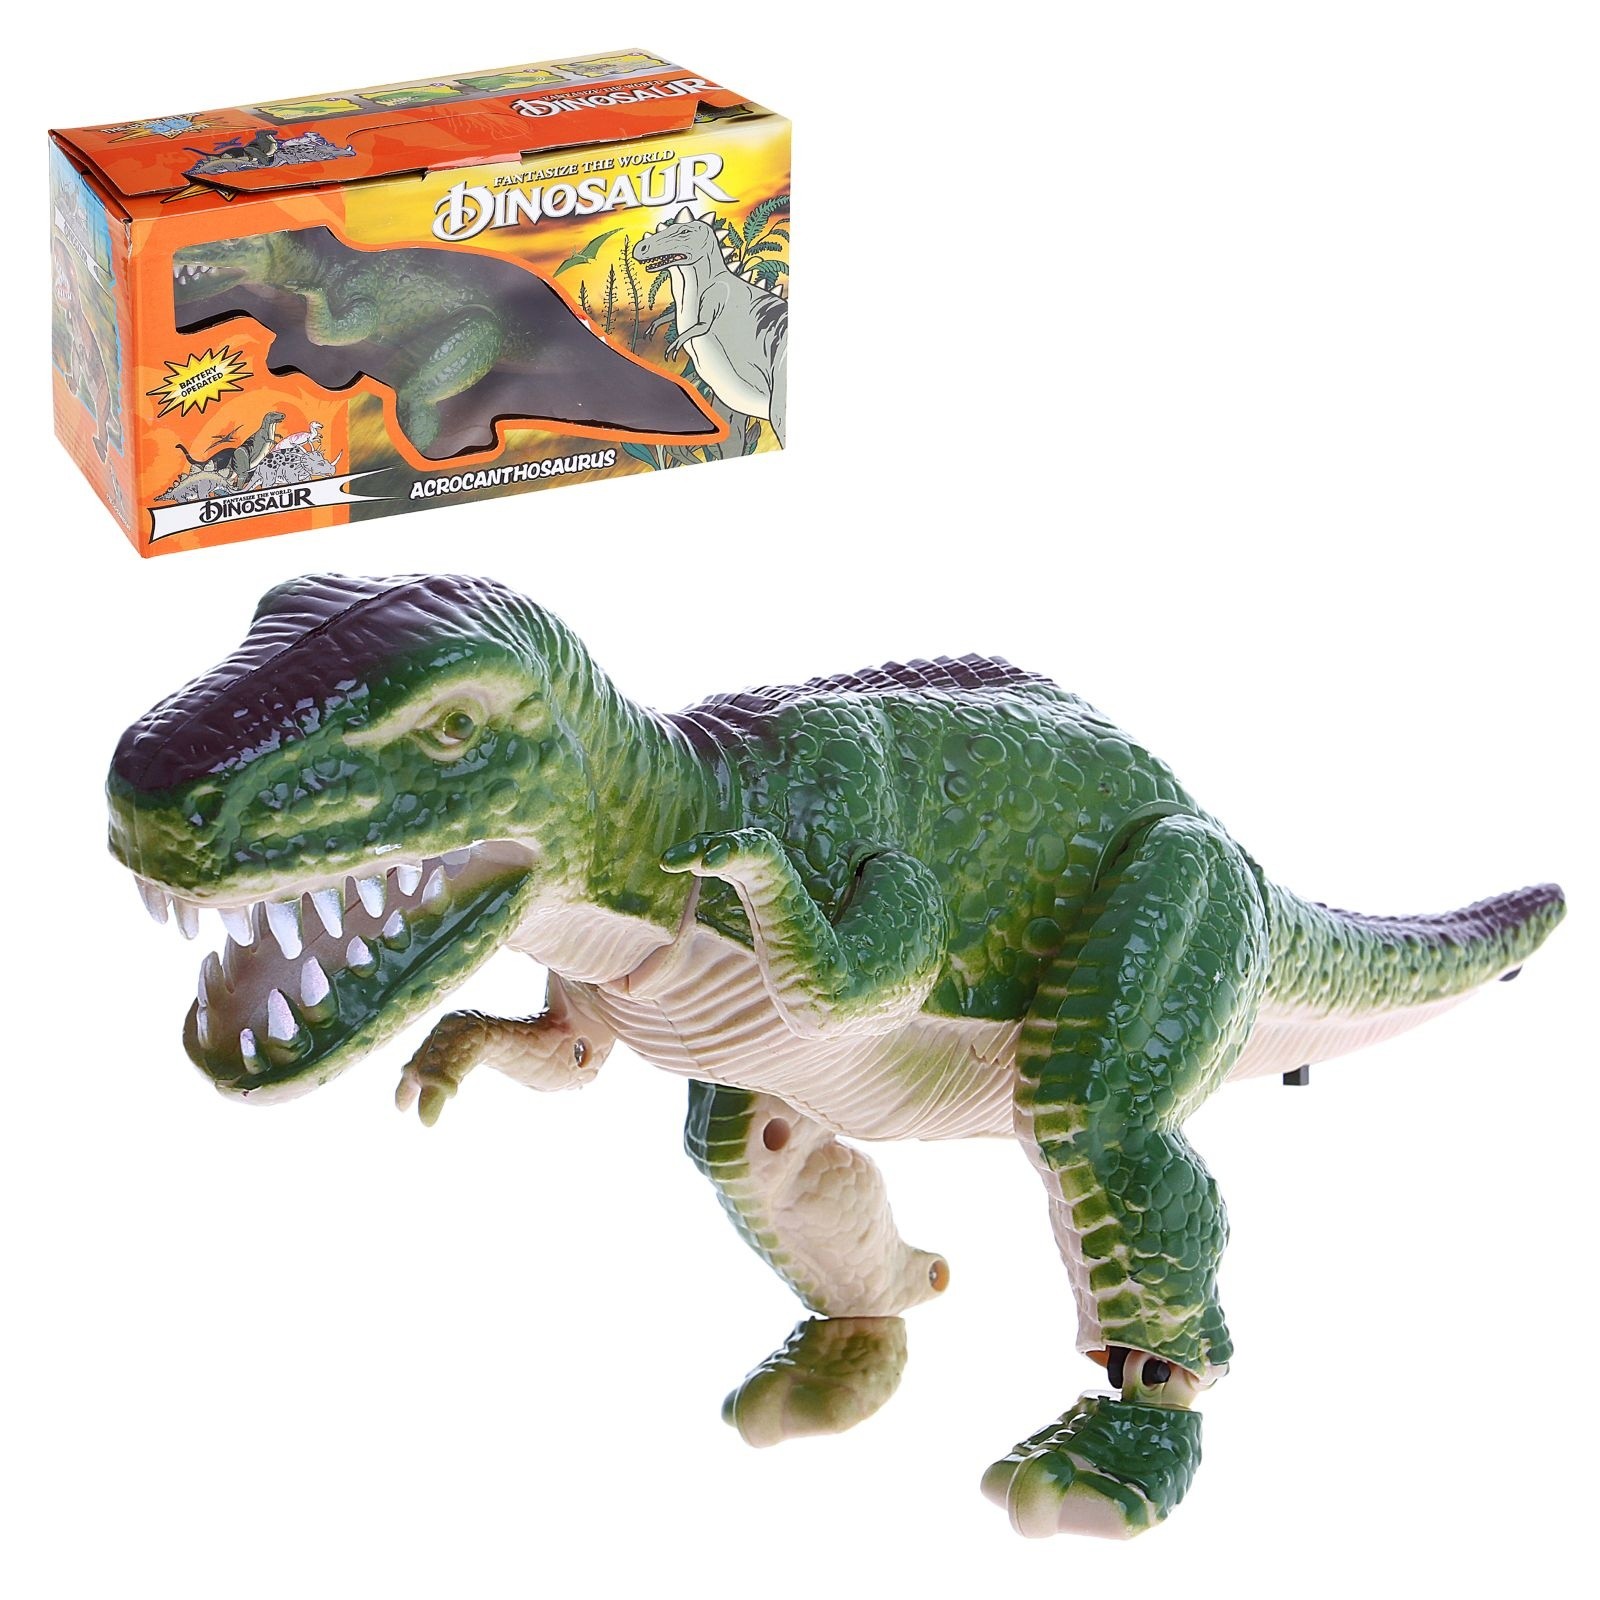 Игрушка динозавр. Игрушечные динозавры. Игрушка динозавр на батарейках. Динозавр рекс игрушка.